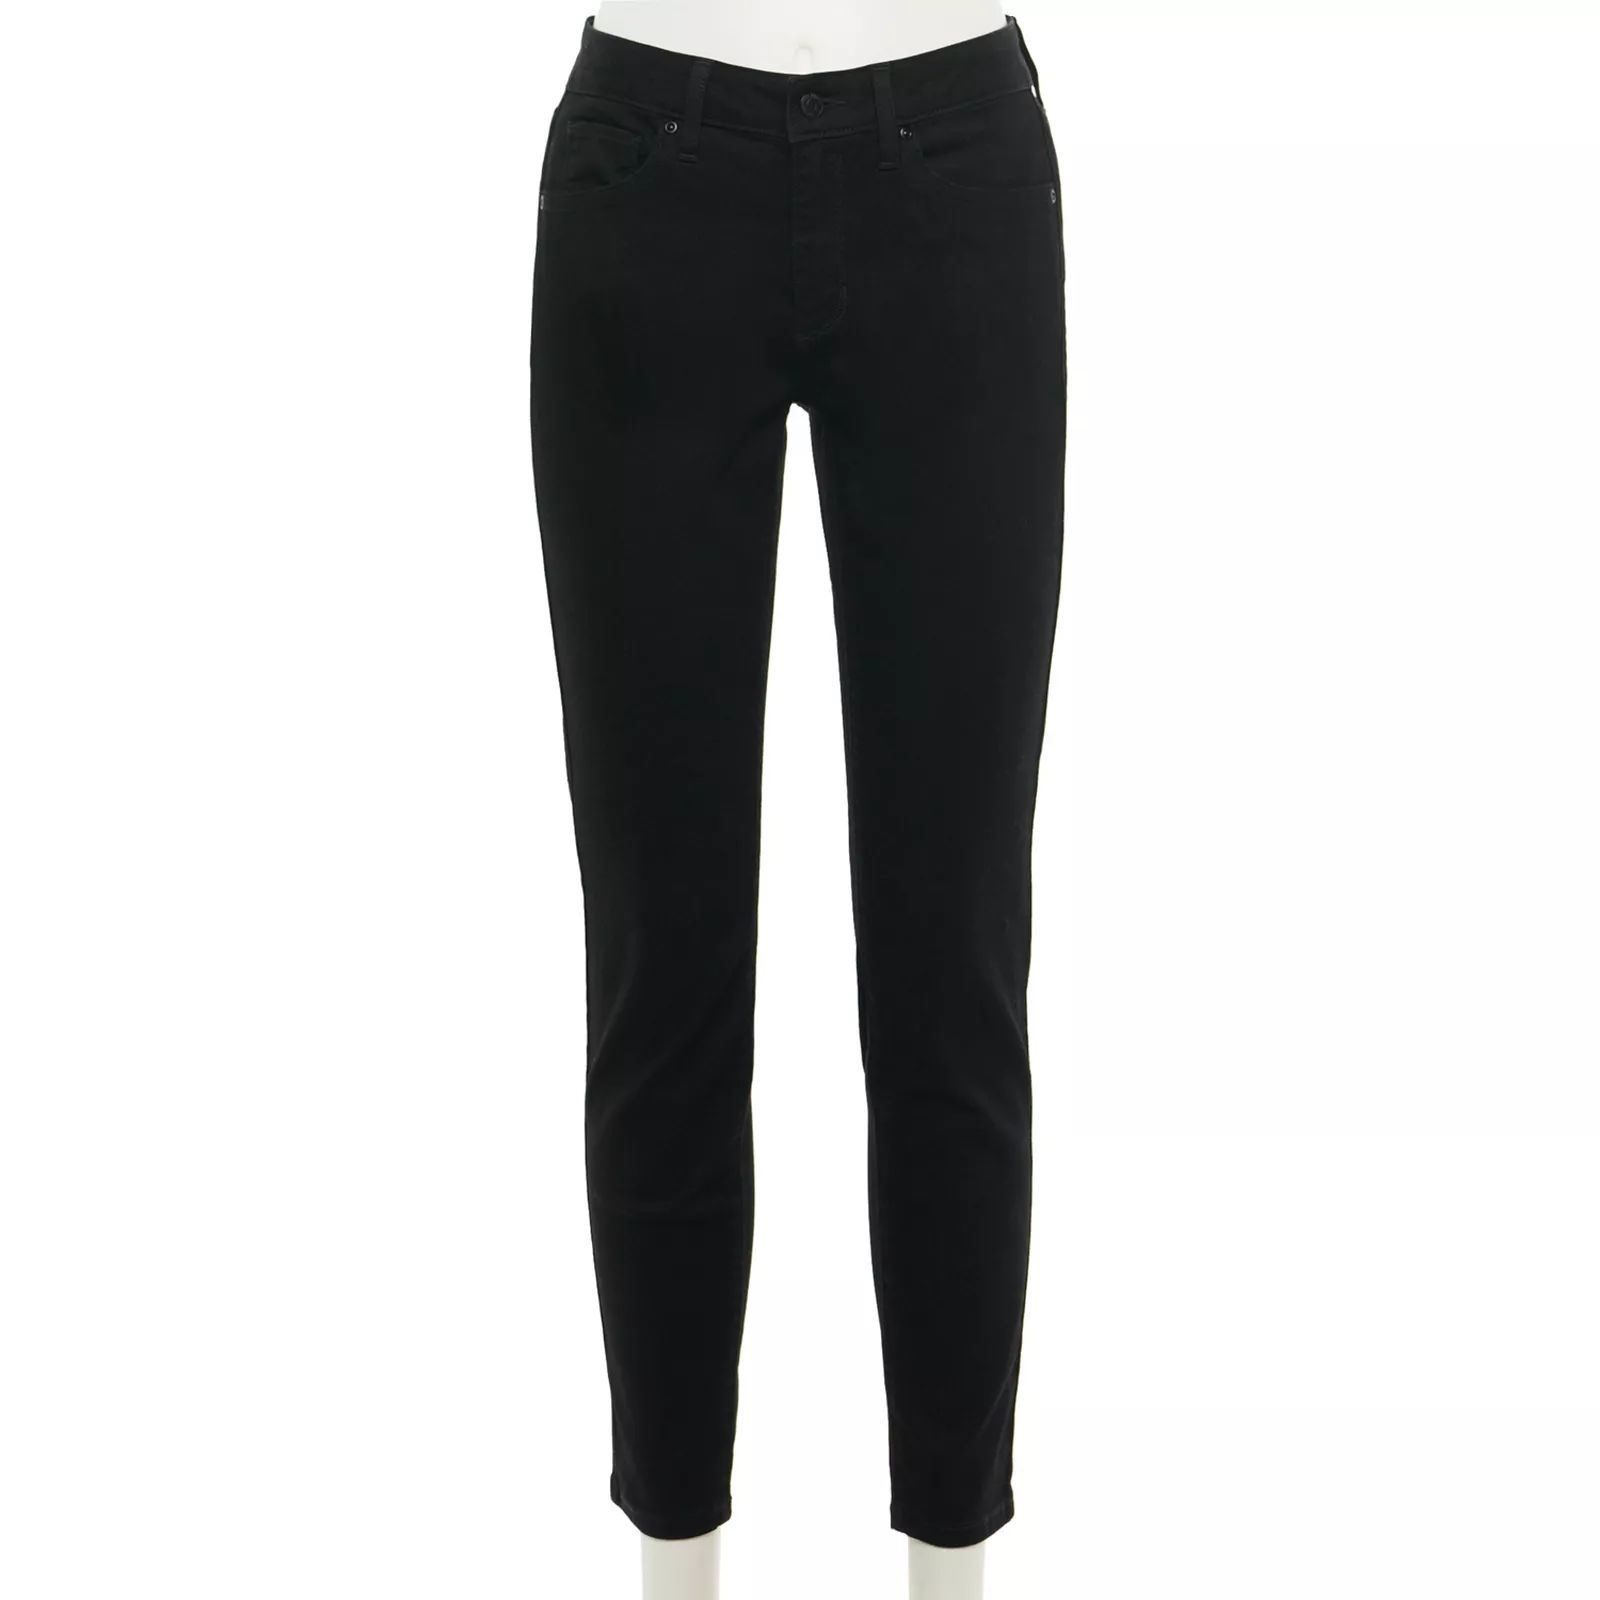 Women's Sonoma Goods For Life Curvy Skinny Jeans, Size: 18 Short, Black | Kohl's